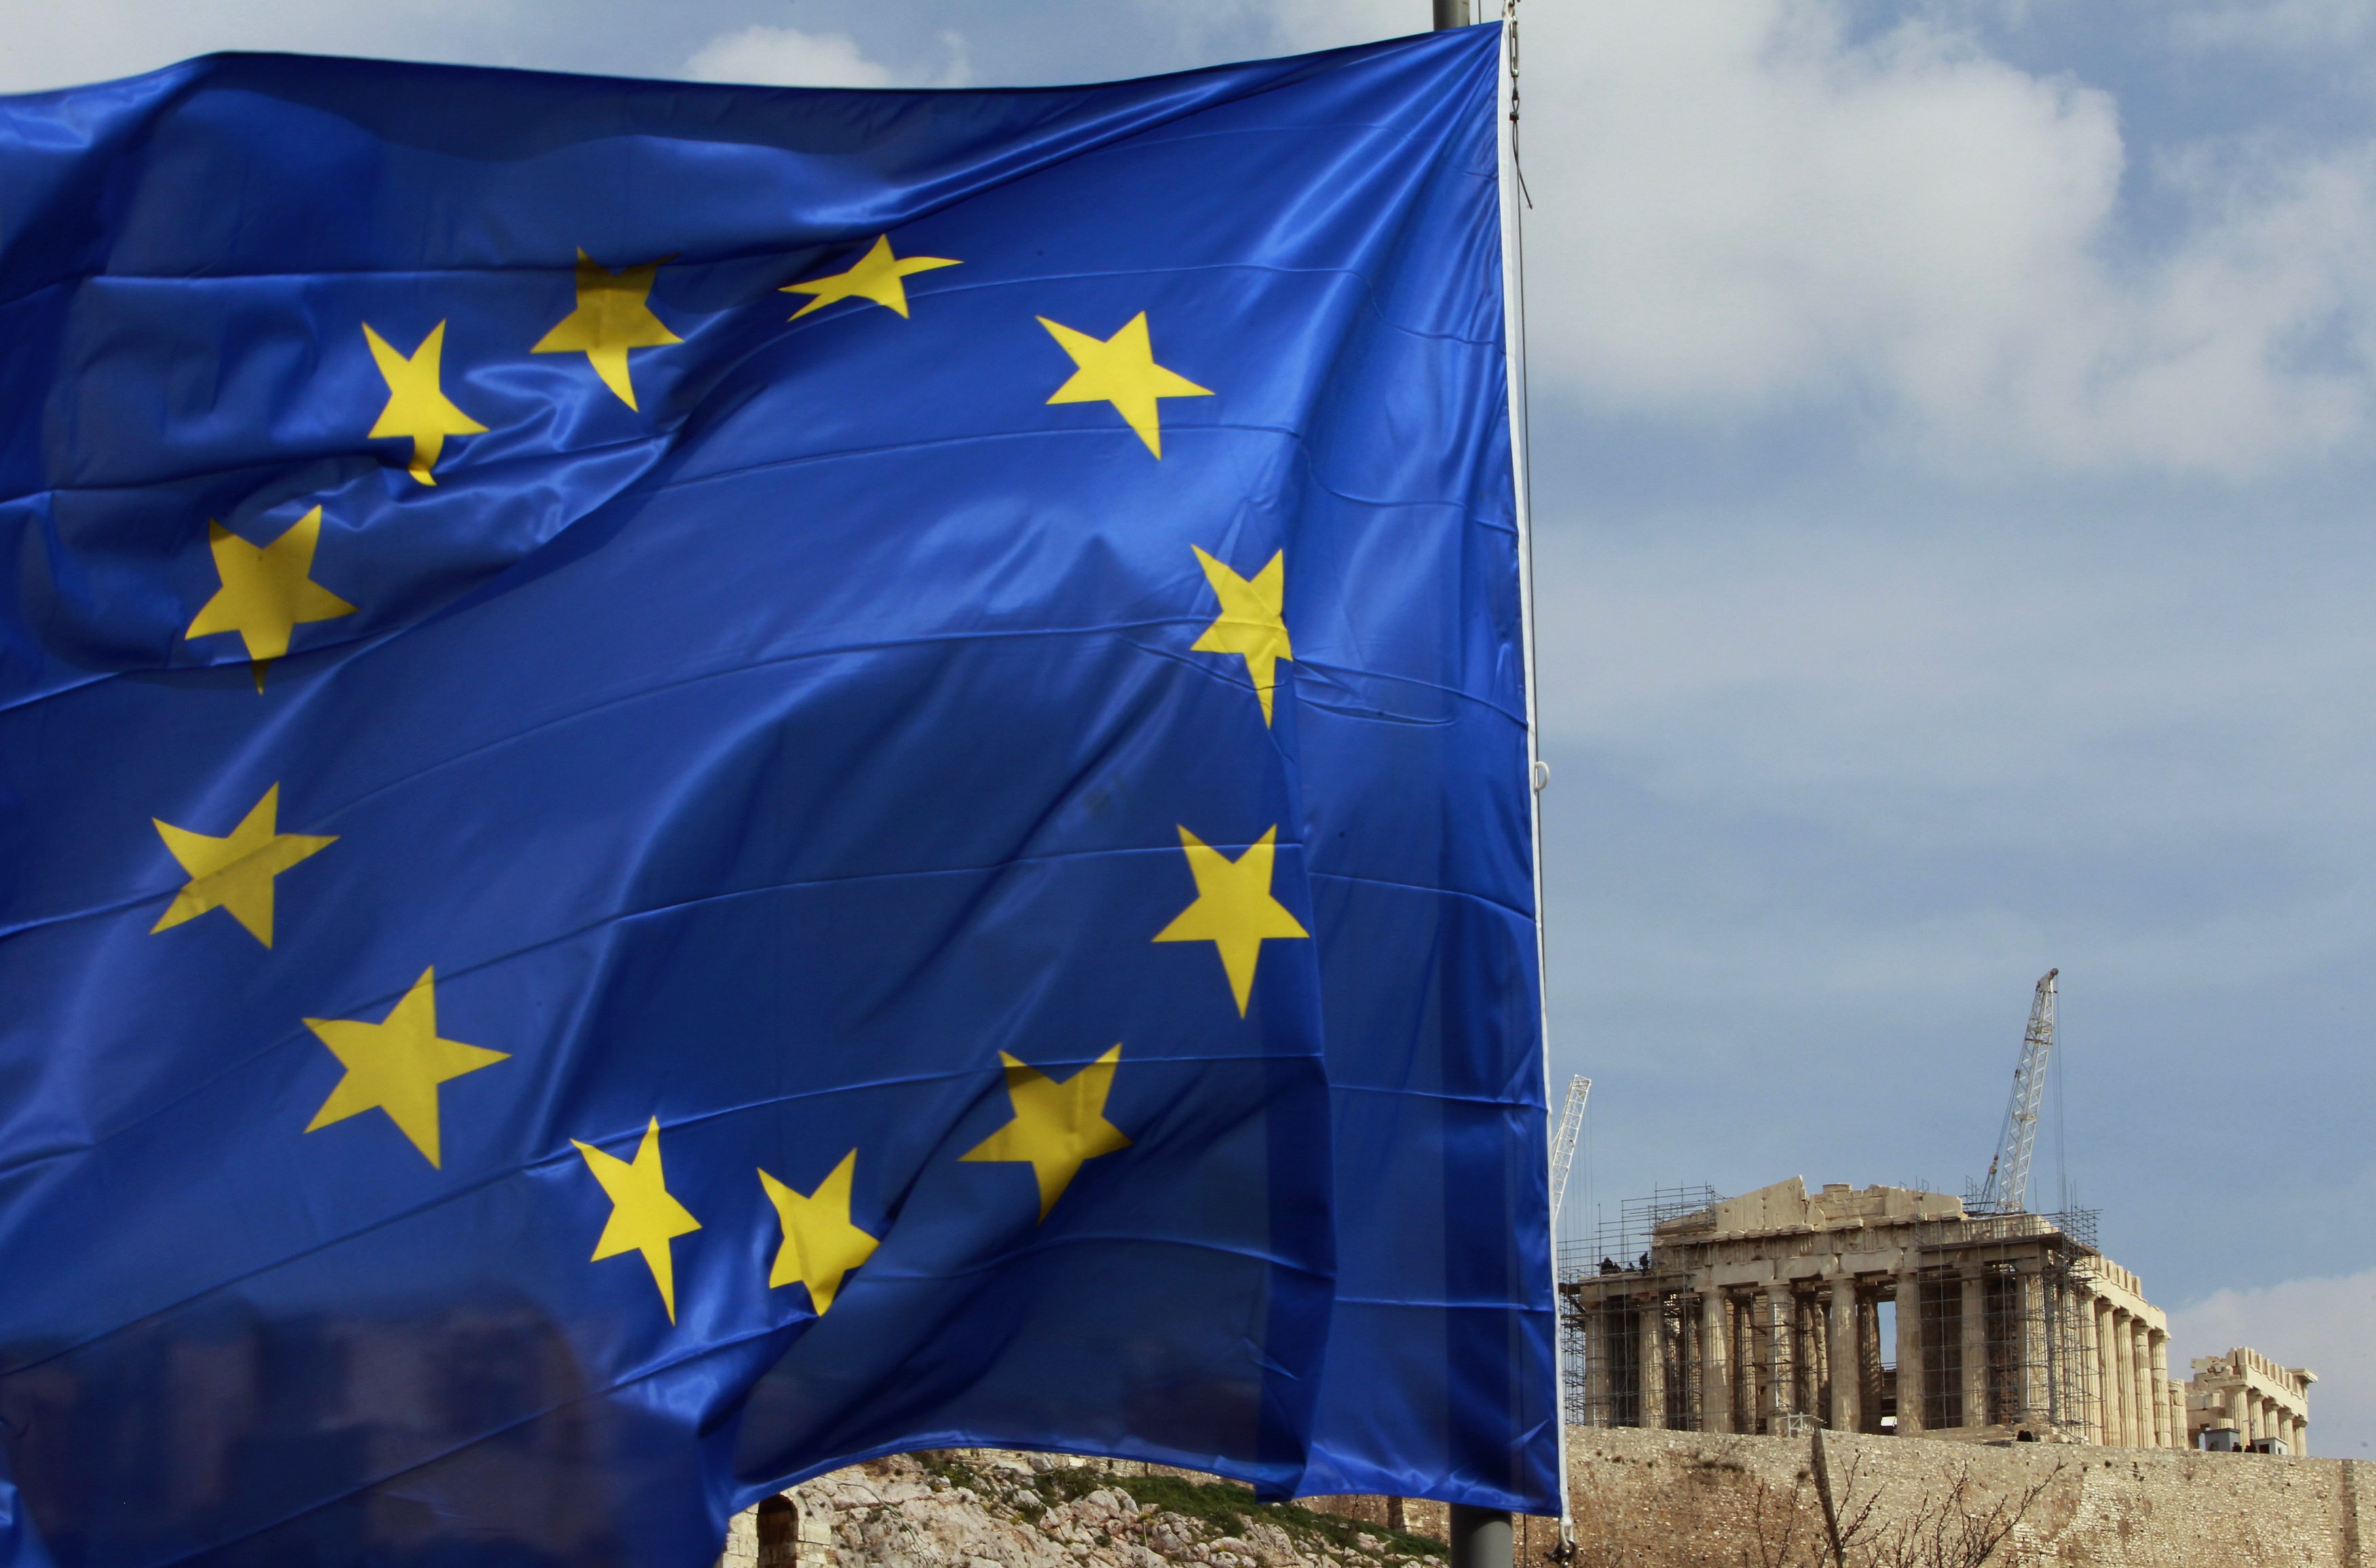 Spiegel:Χωρίς θετικό αποτέλεσμα η μείωση κατώτατου μισθού στην Ελλάδα